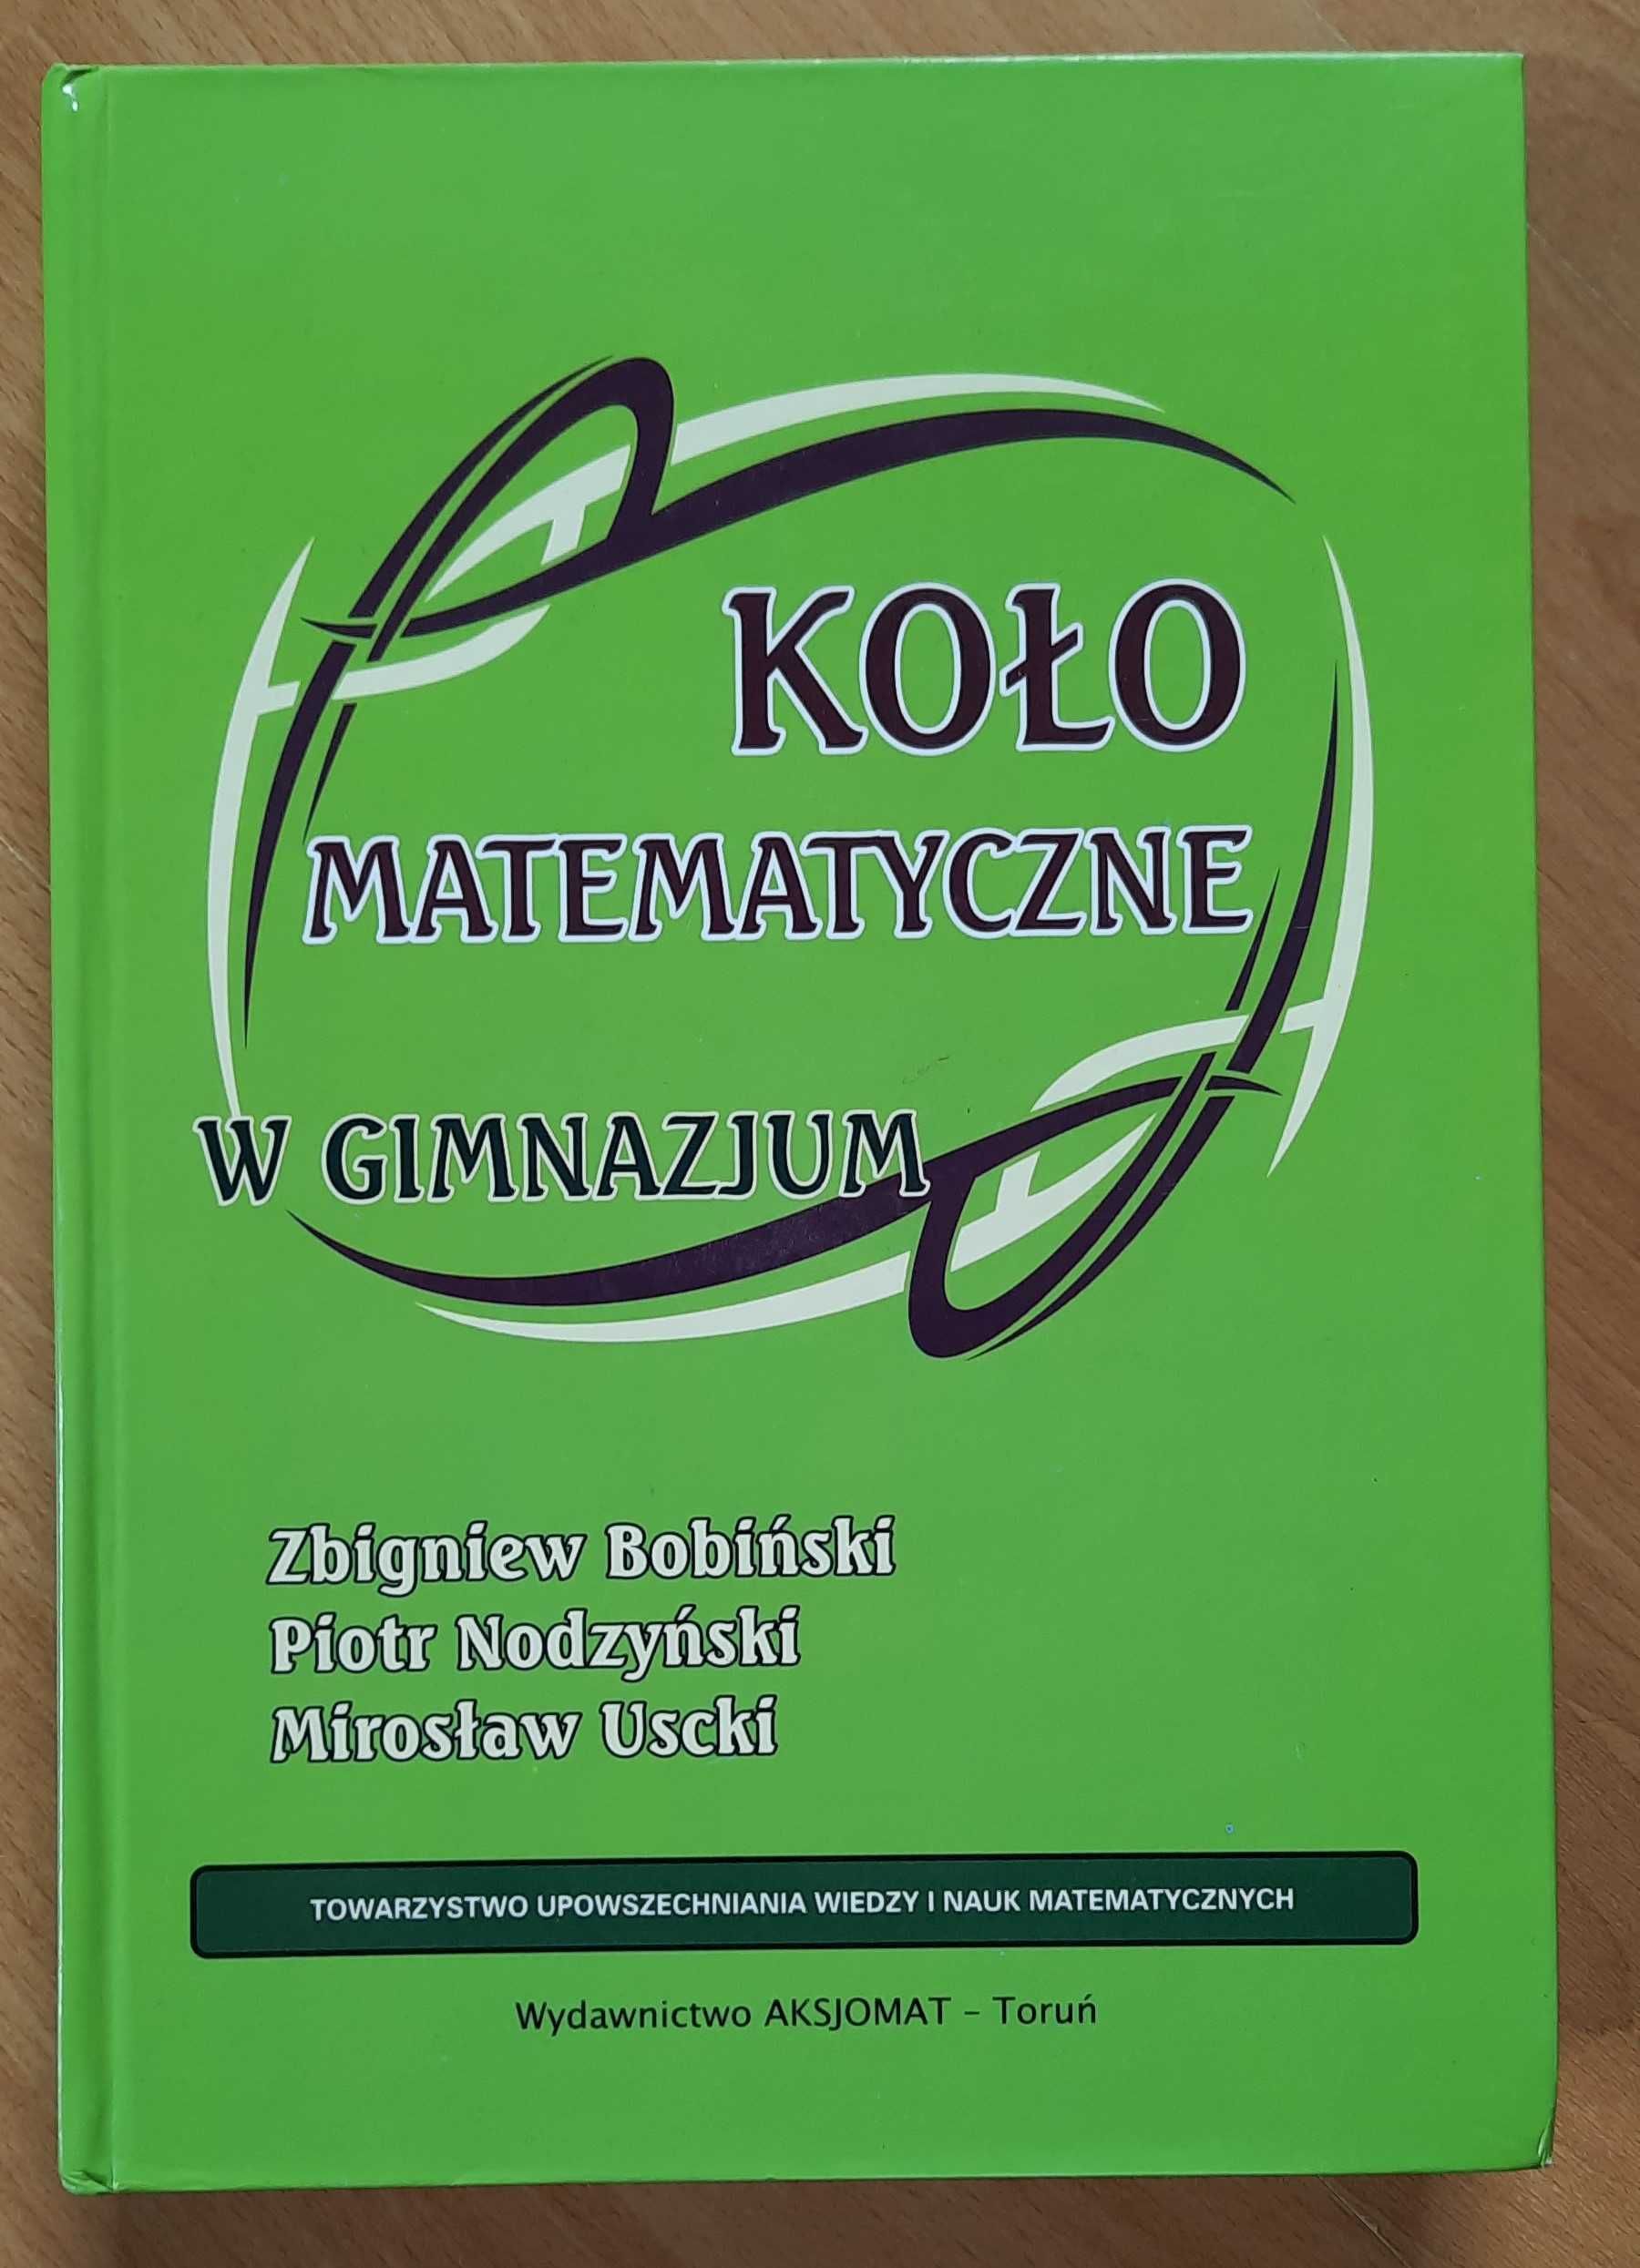 Koło matematyczne Zb. Bobiński, P. Nodzyński, M. Uscki